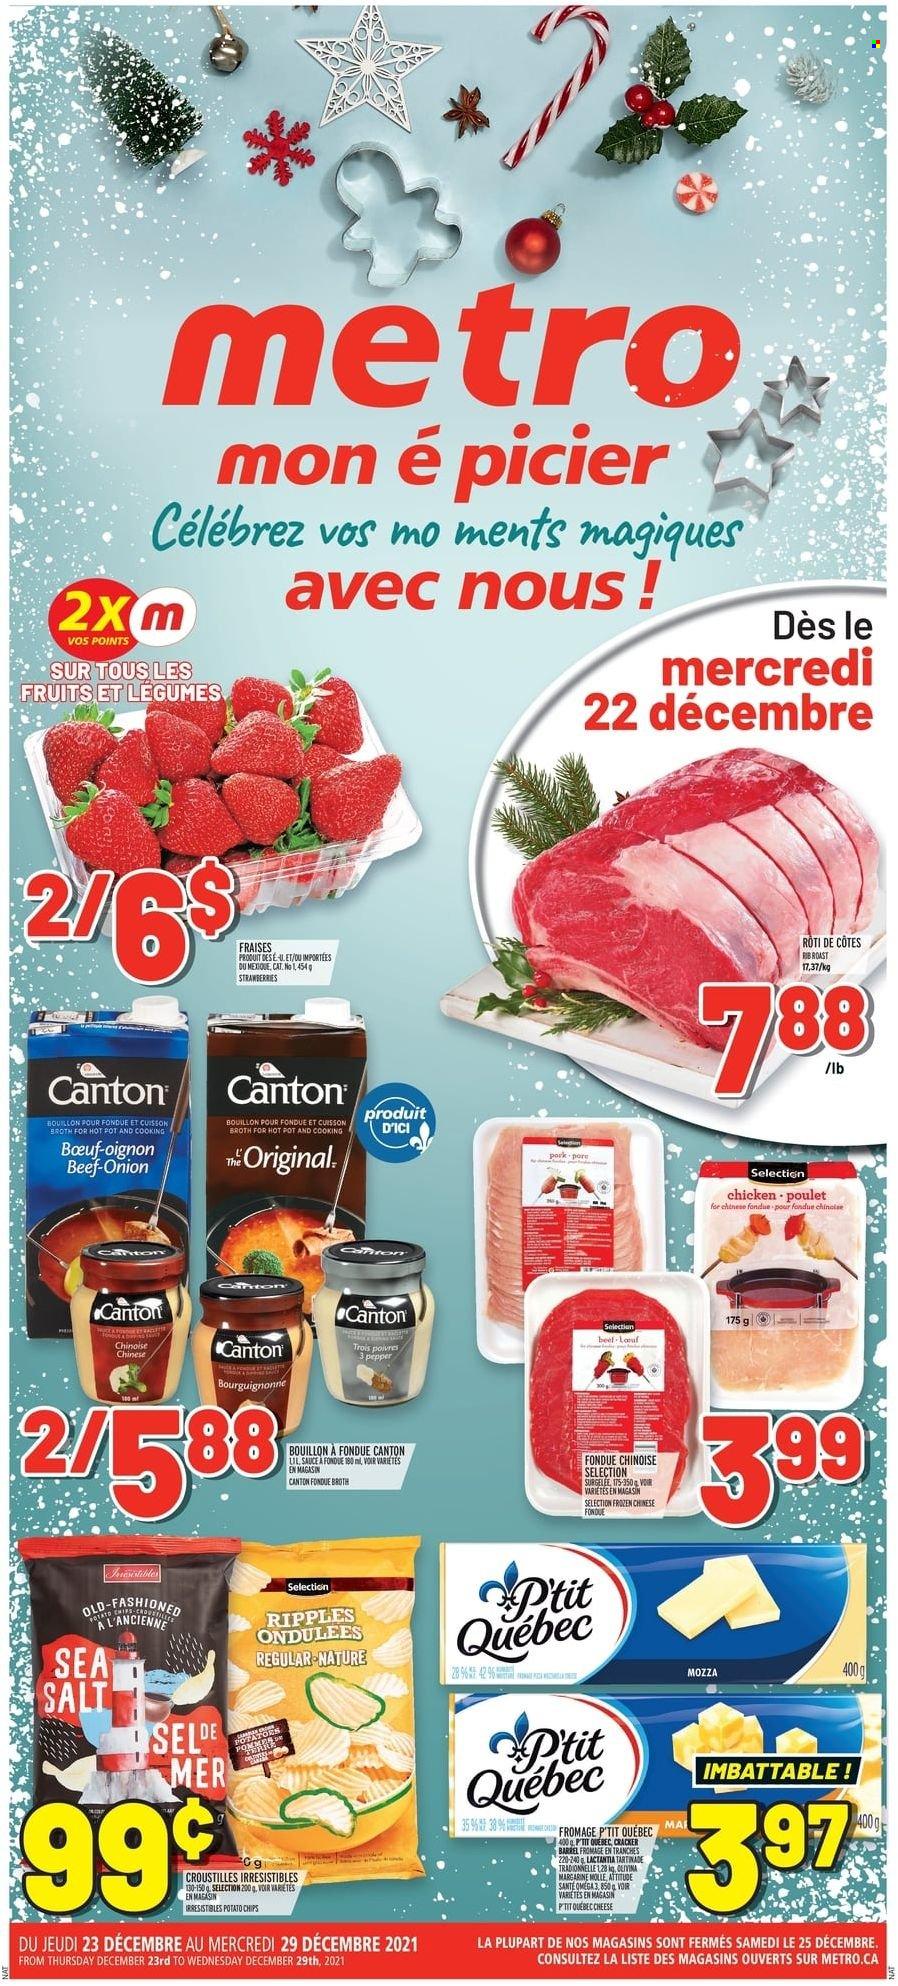 thumbnail - Circulaire Metro - 23 Décembre 2021 - 29 Décembre 2021 - Produits soldés - fraises, pièce à fondue, fromage, margarine, chips. Page 1.